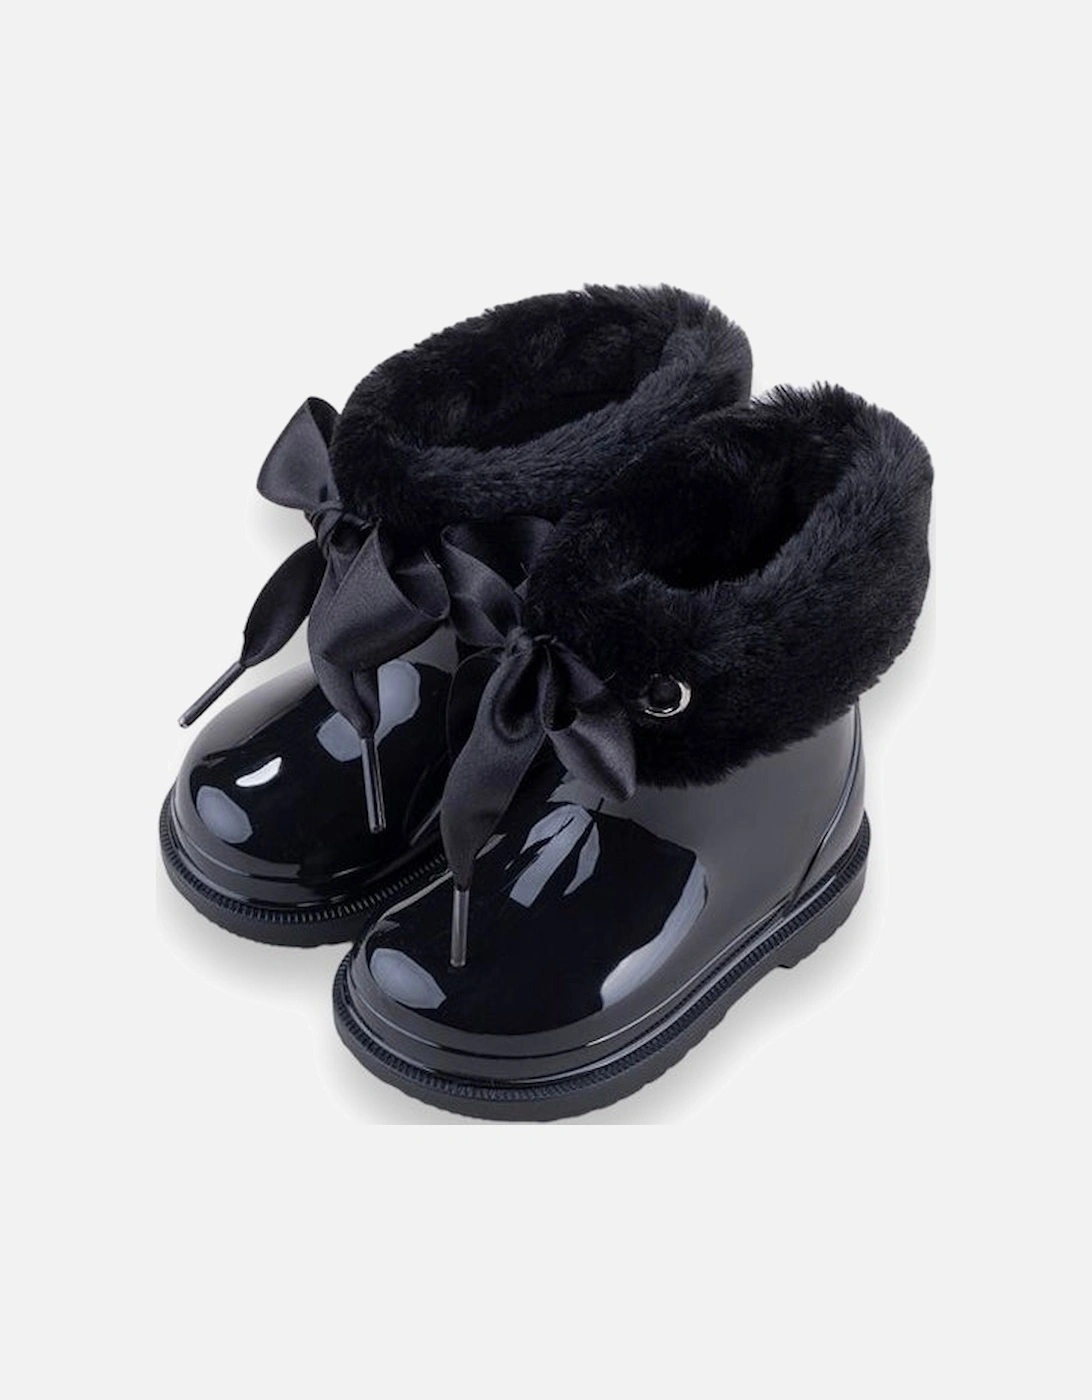 Black Faux Fur Boots